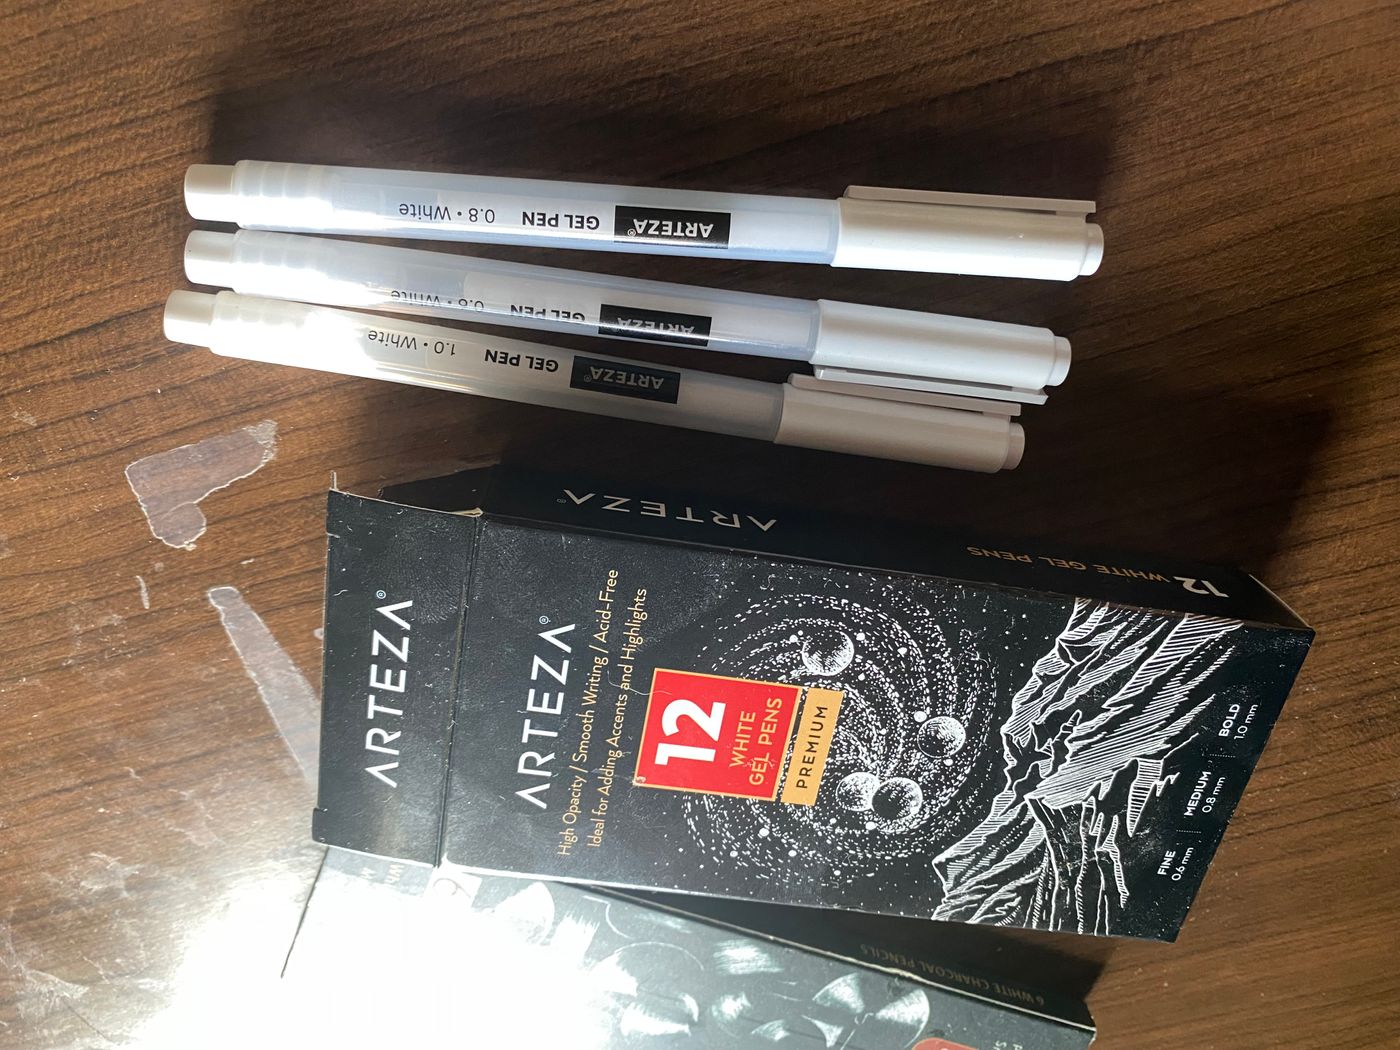 White Gel Pens for Art, Black Paper 0.8Mm Fine Point Gel Pen for Artists,  Highli